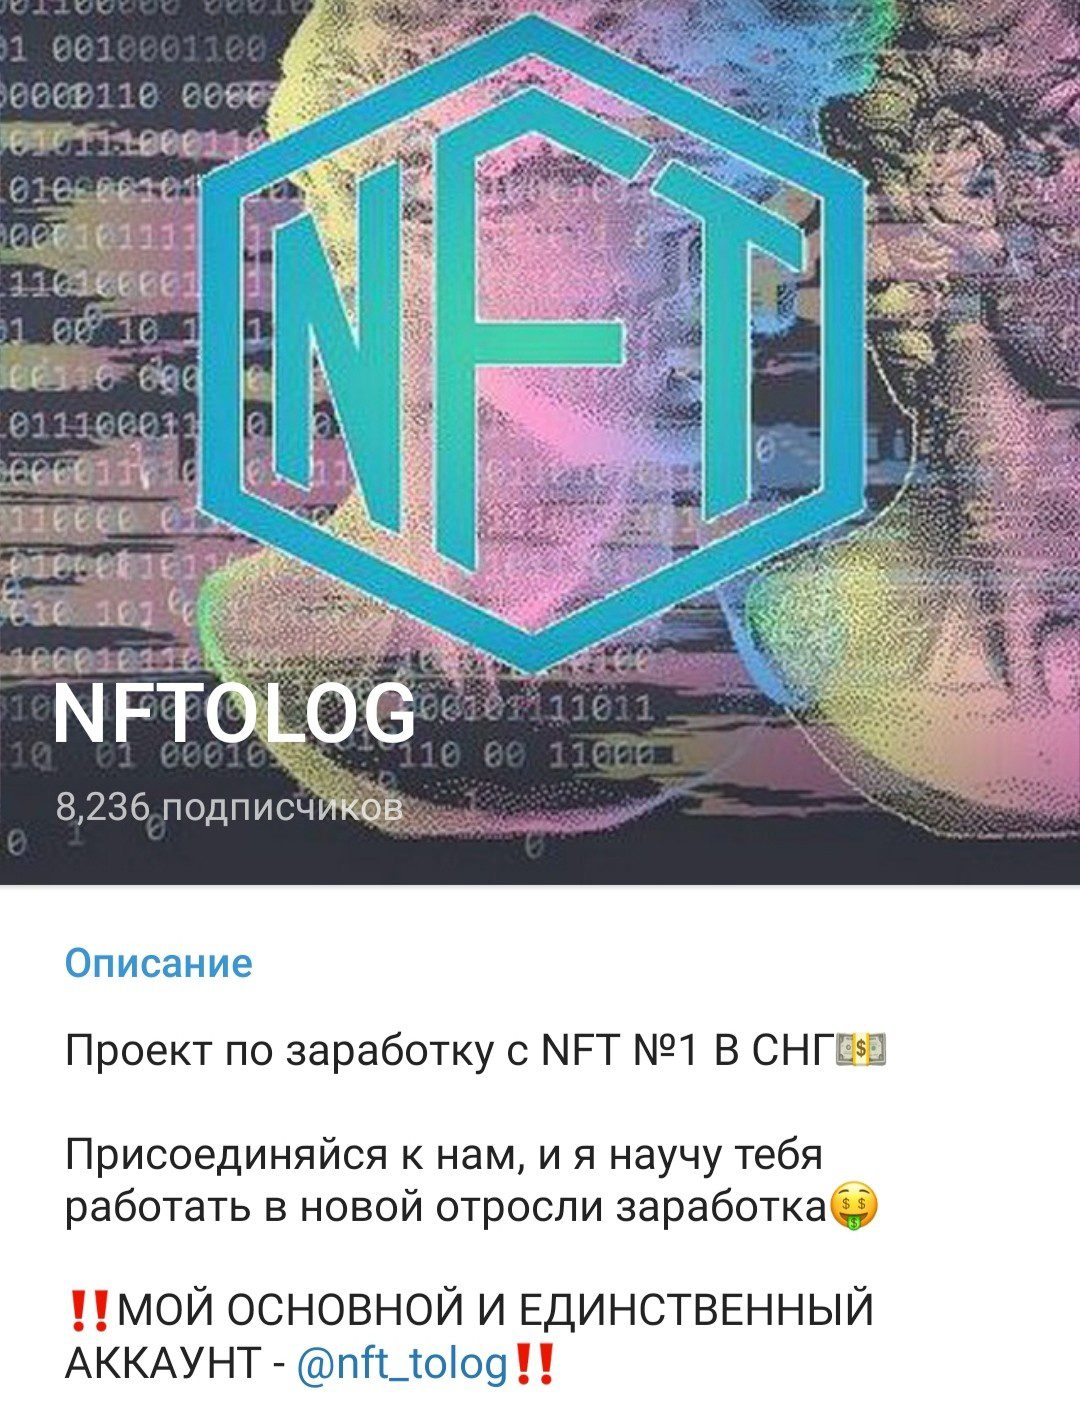 Телеграм канал Nftolog обзор